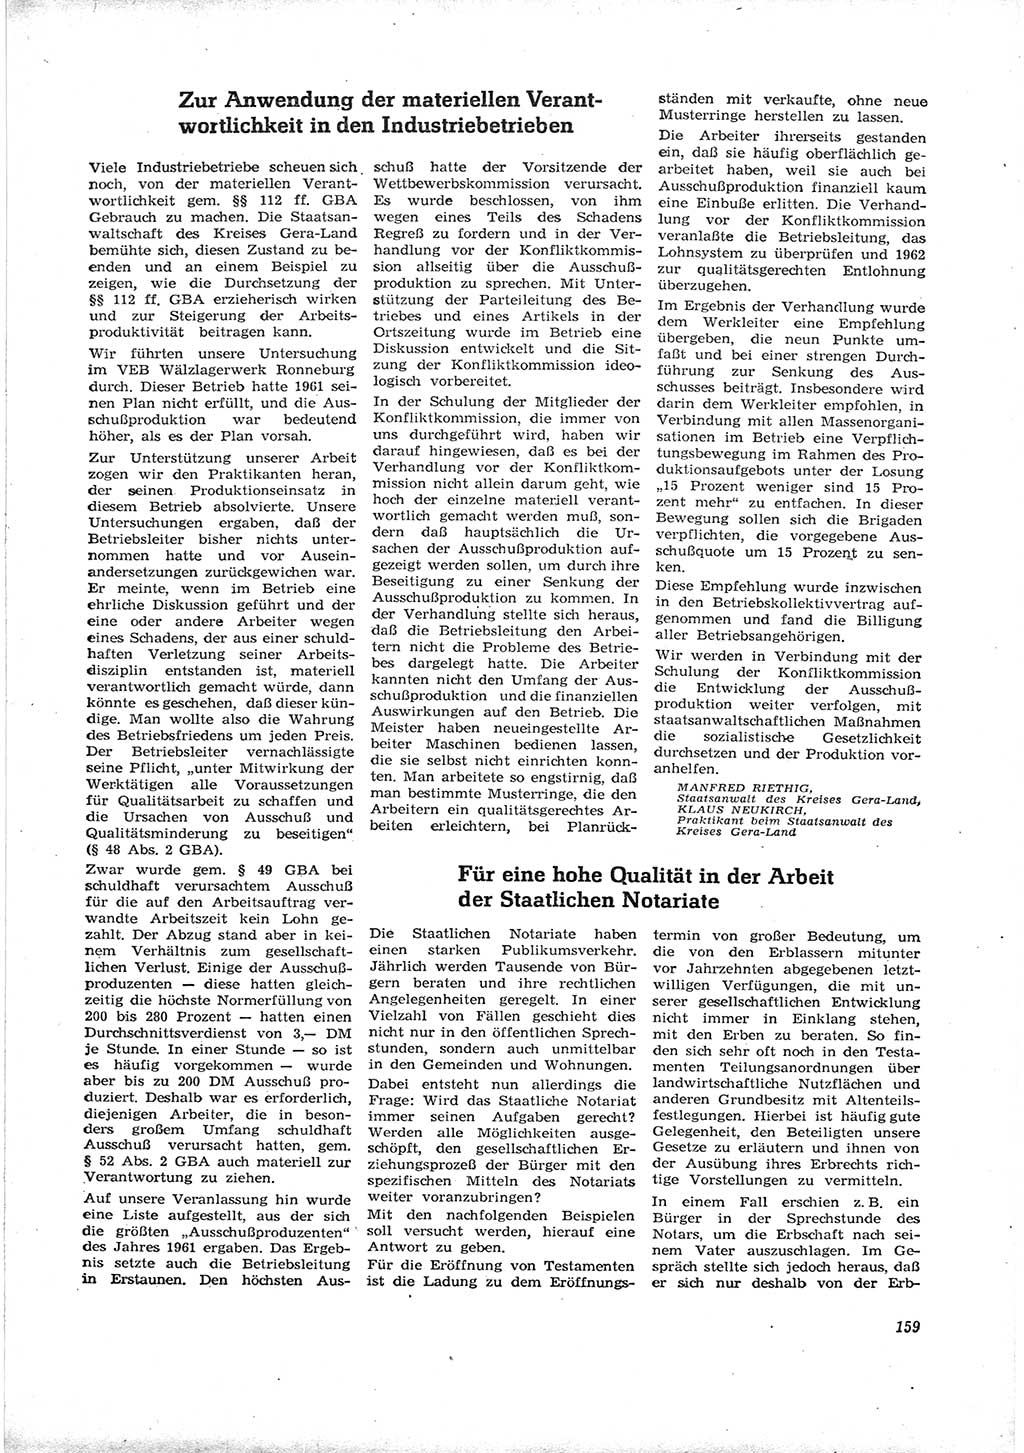 Neue Justiz (NJ), Zeitschrift für Recht und Rechtswissenschaft [Deutsche Demokratische Republik (DDR)], 16. Jahrgang 1962, Seite 159 (NJ DDR 1962, S. 159)